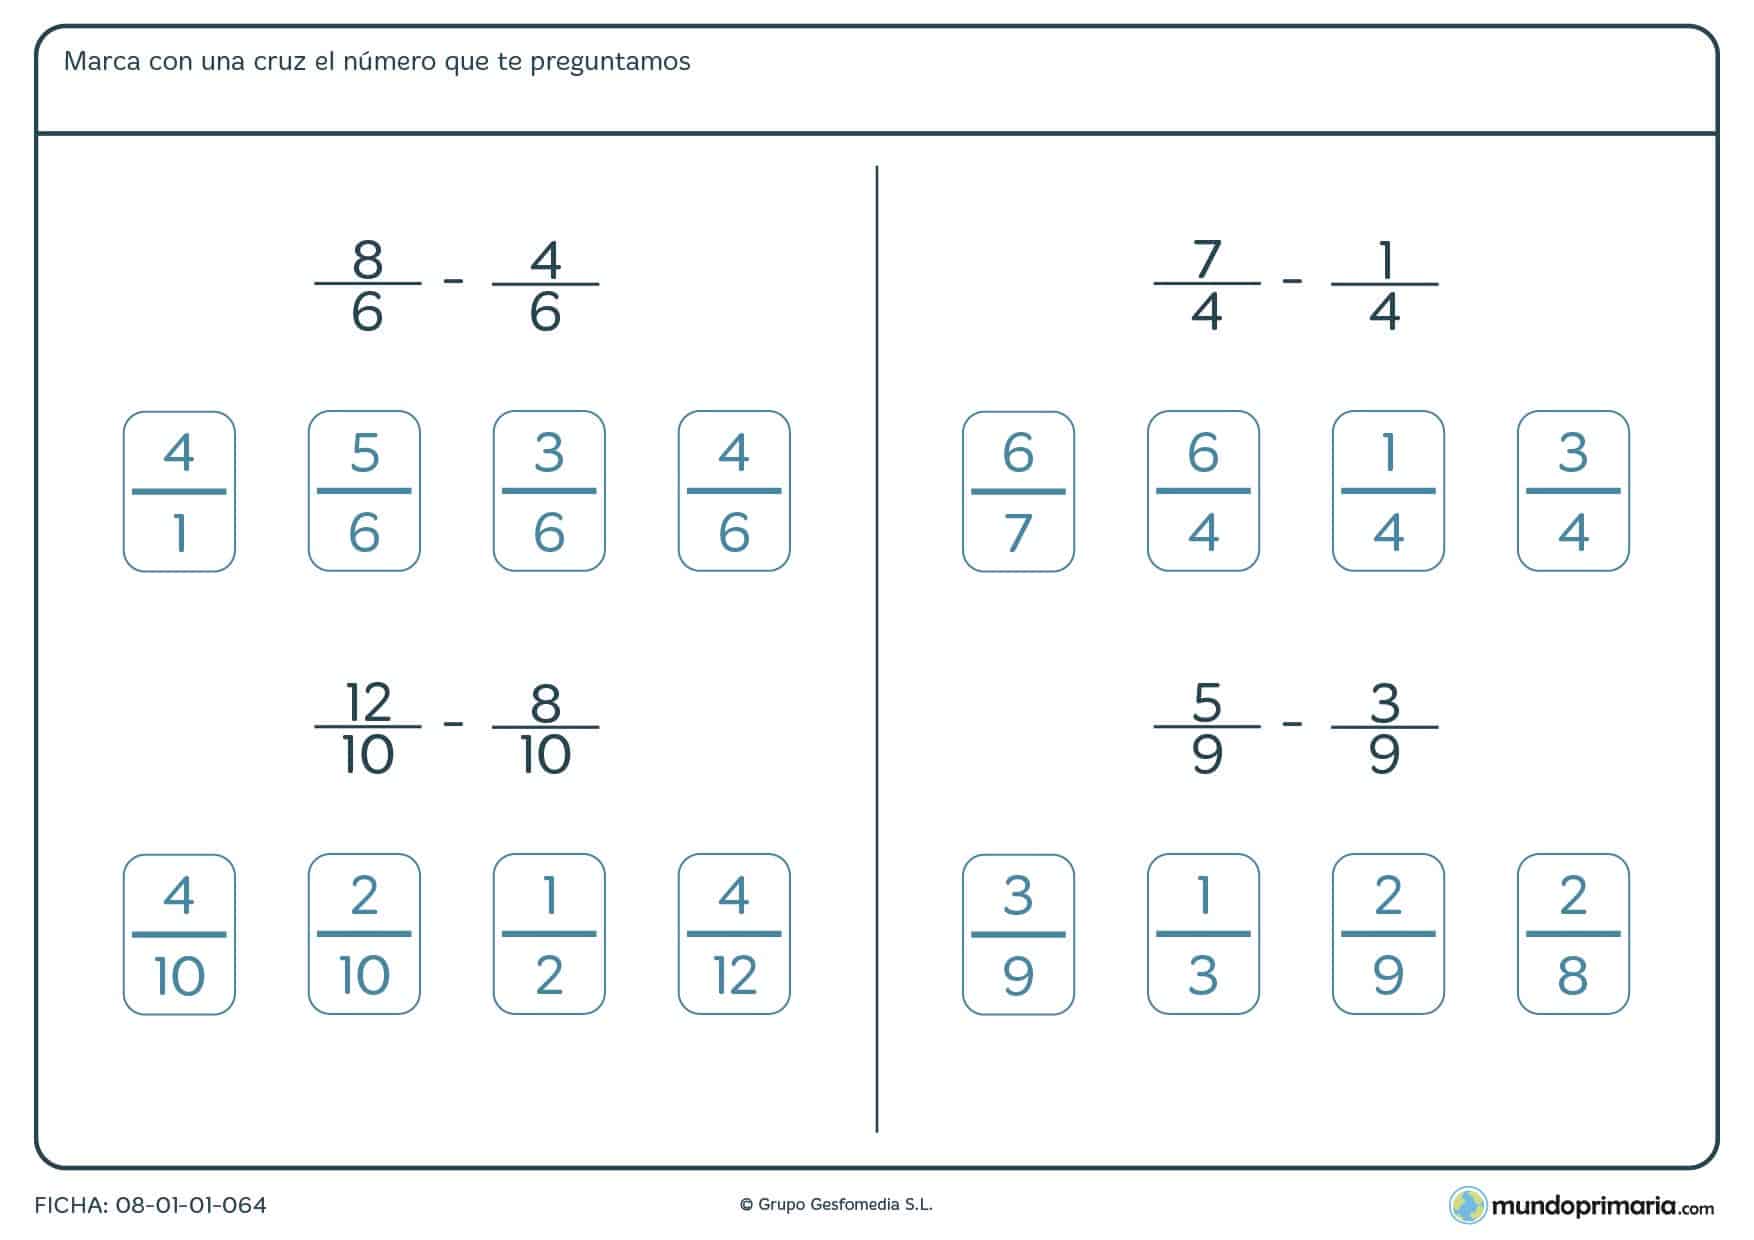 Ficha con sumas y restas de fracciones de distinto denominador para 6º